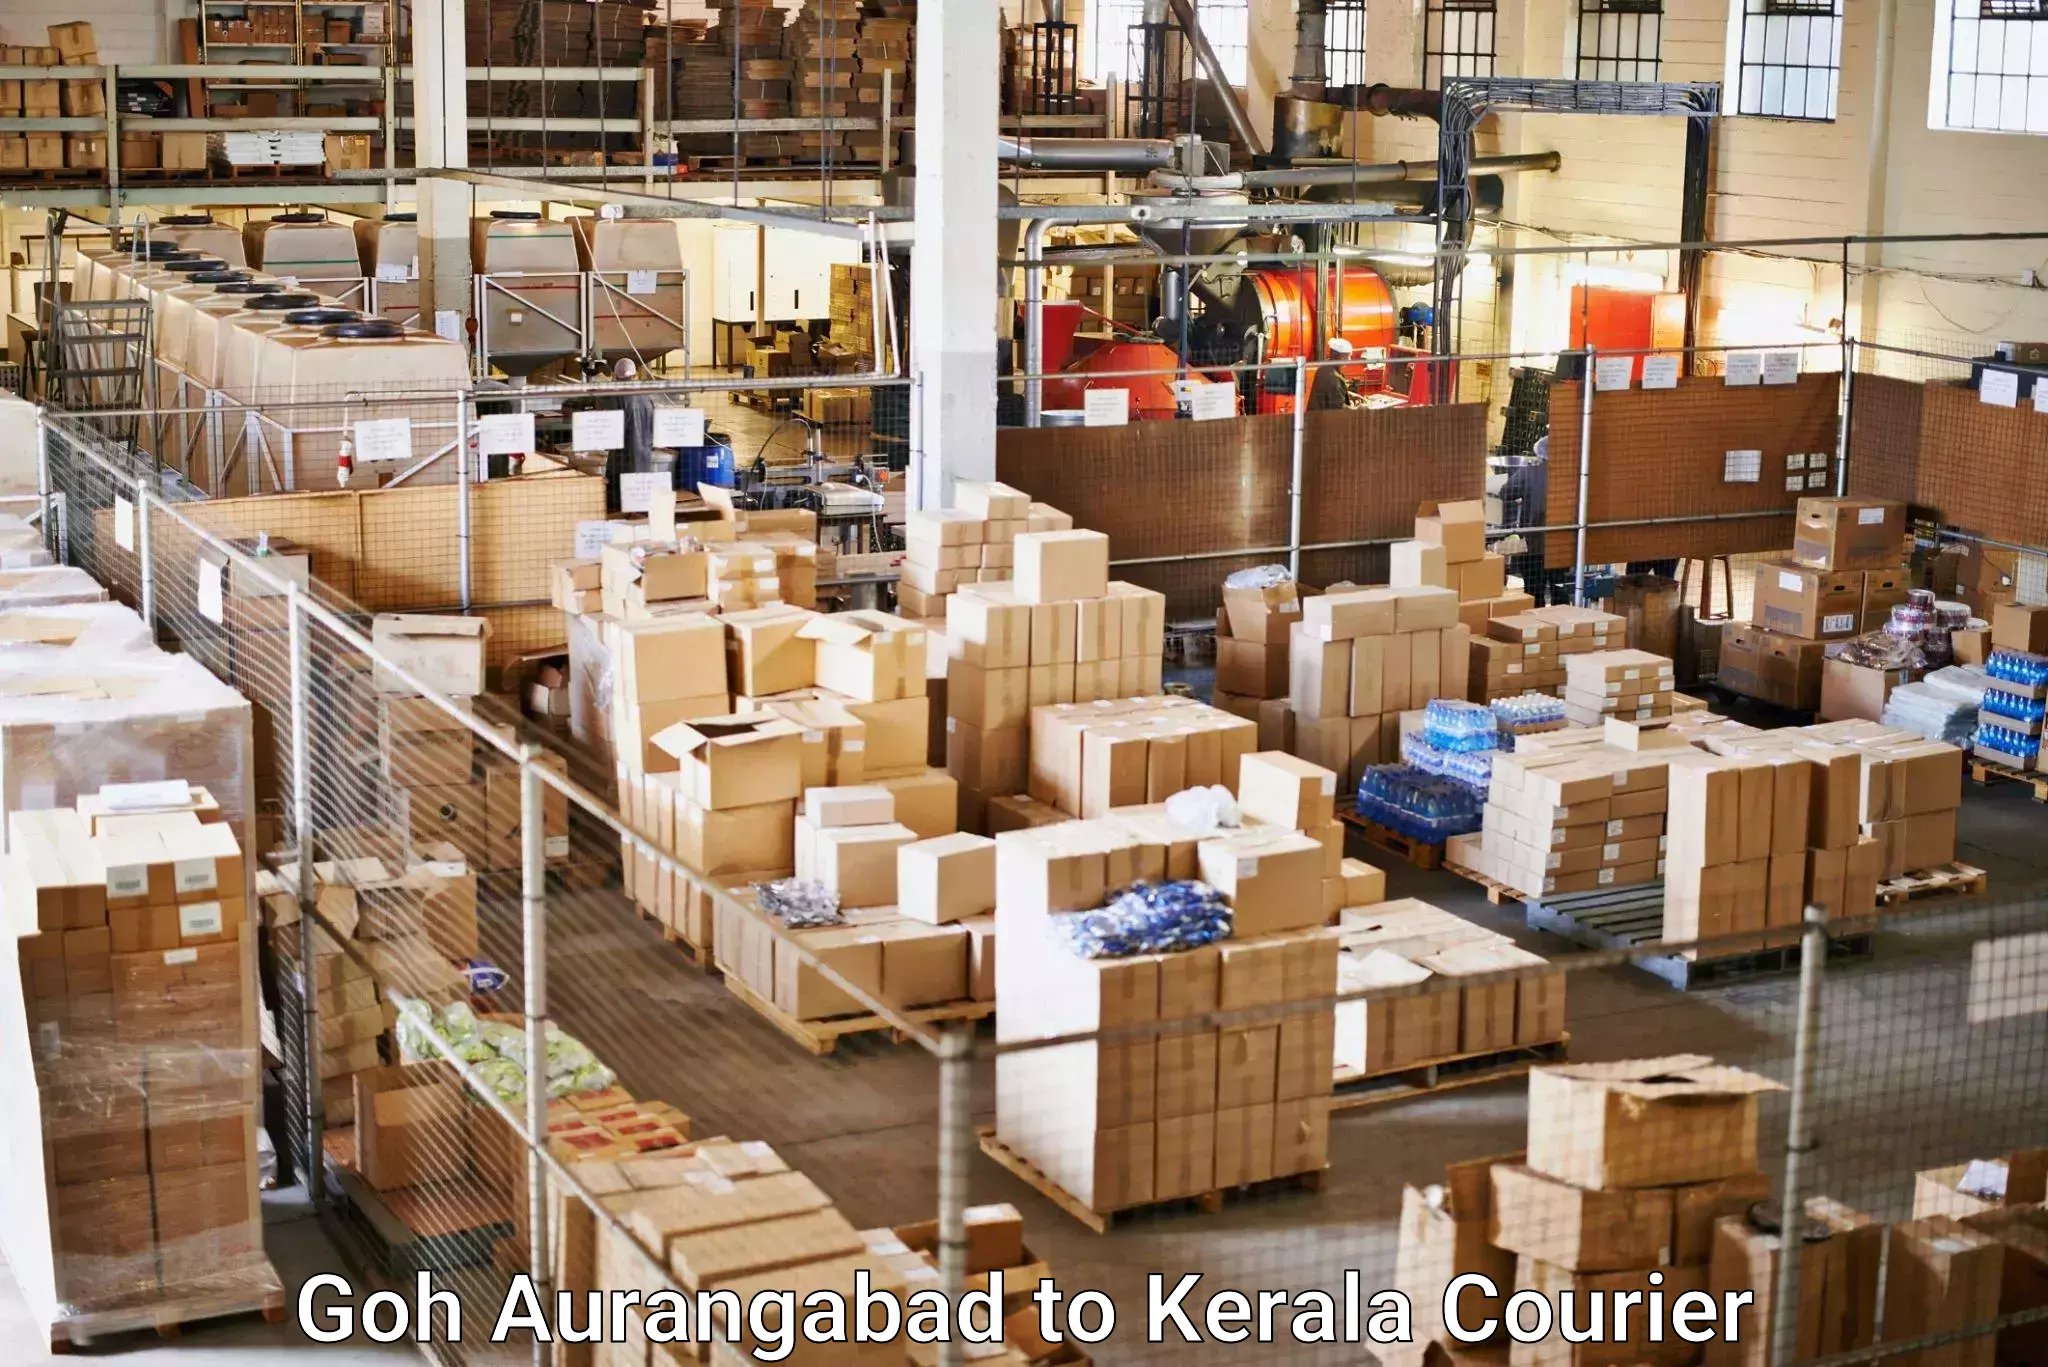 Express package handling Goh Aurangabad to Kerala